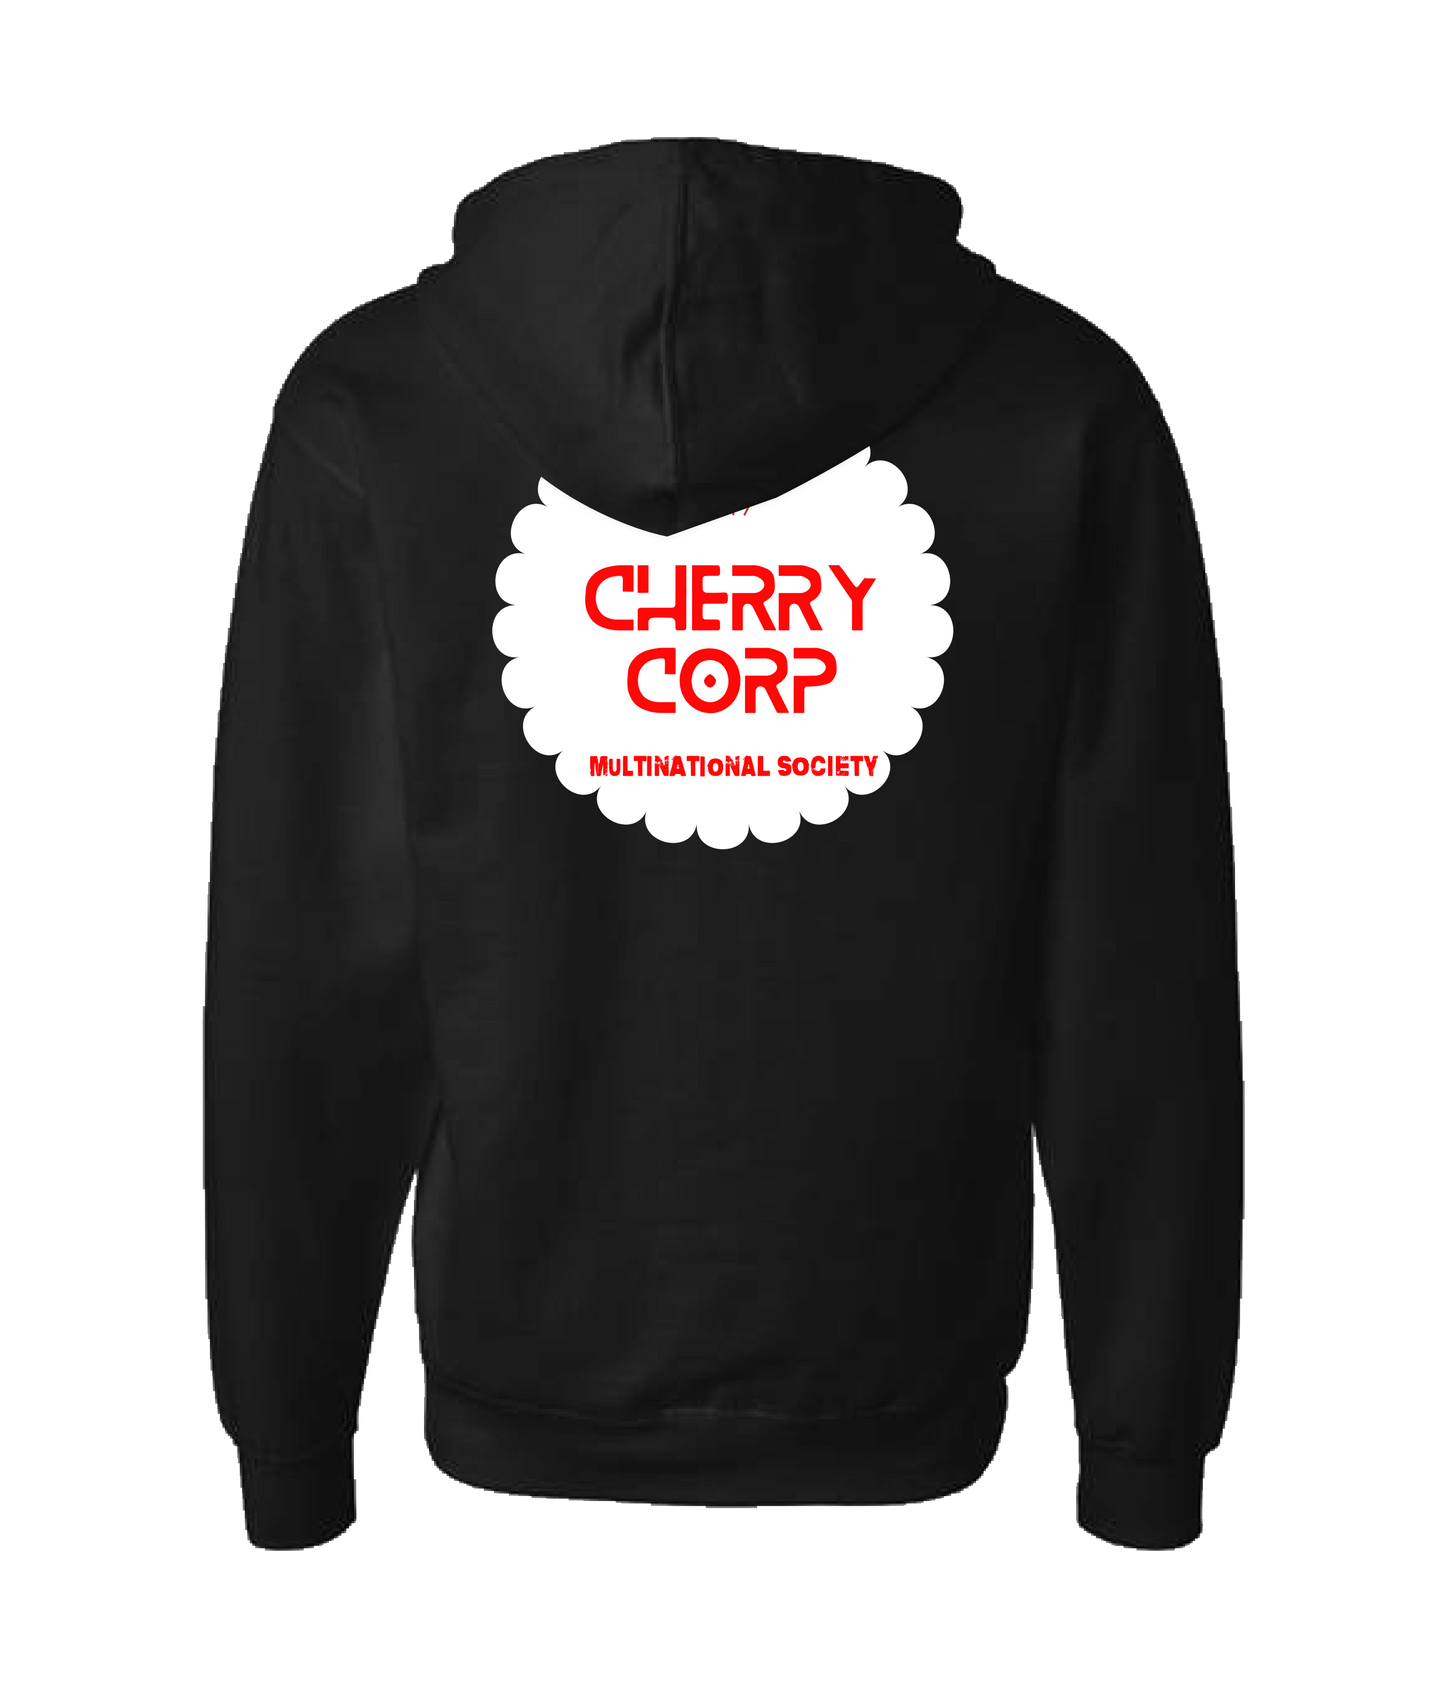 Cherrycorp - MS - Black Zip Up Hoodie